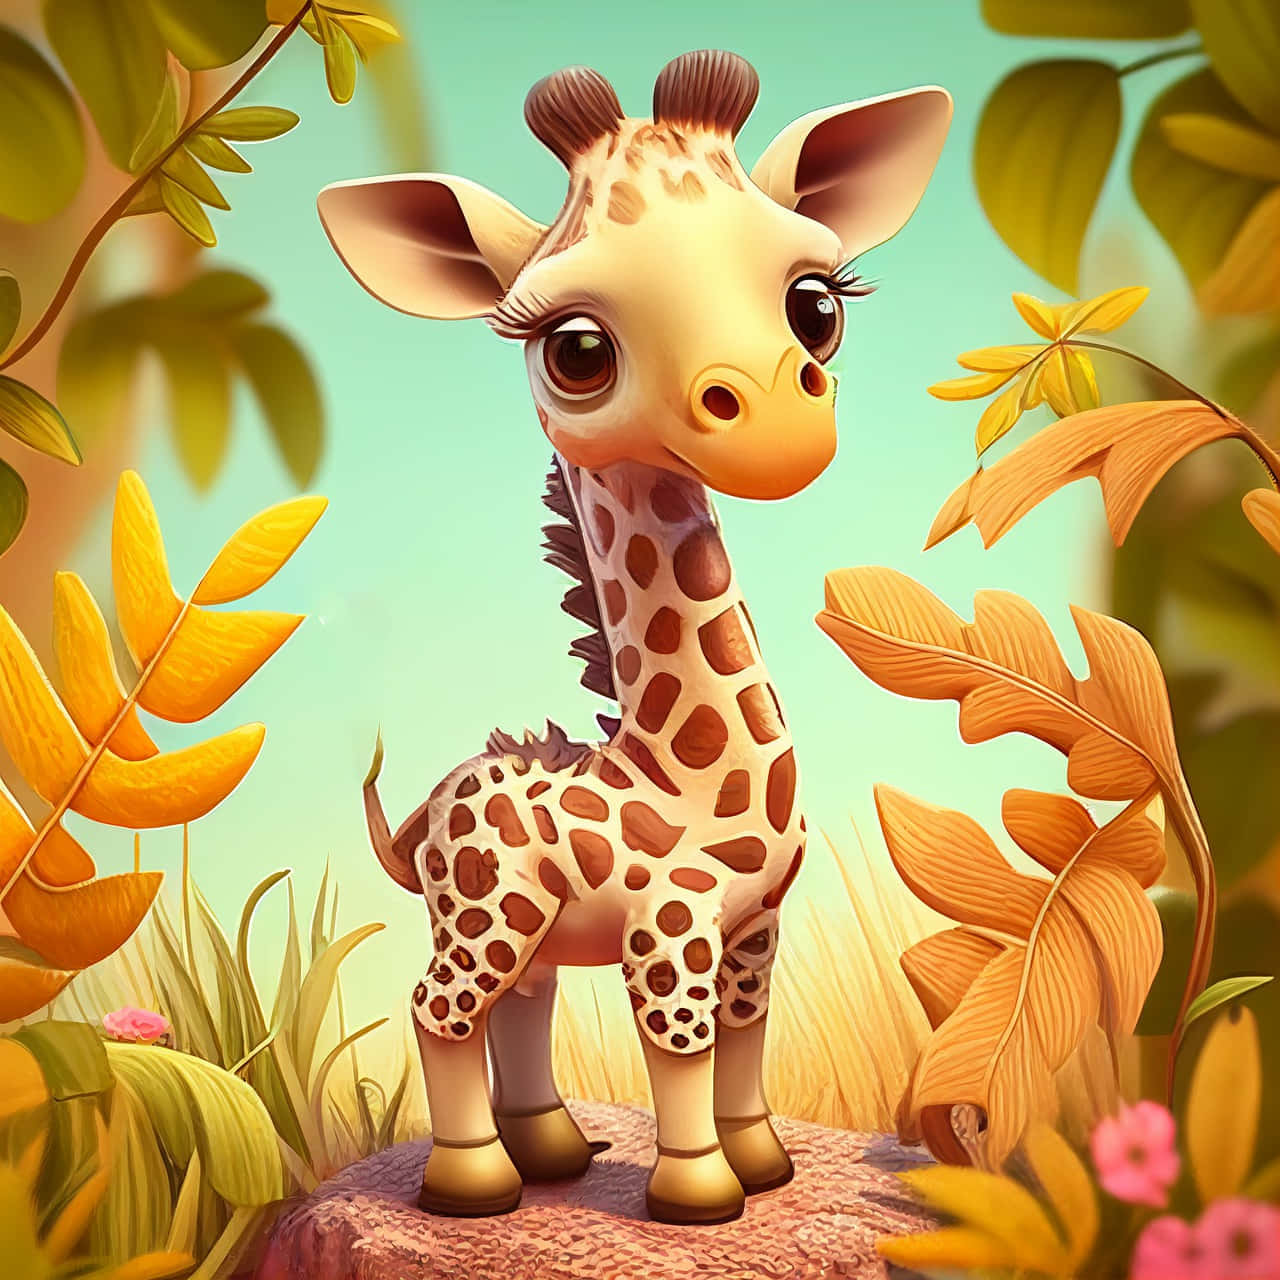 adorable baby giraffe